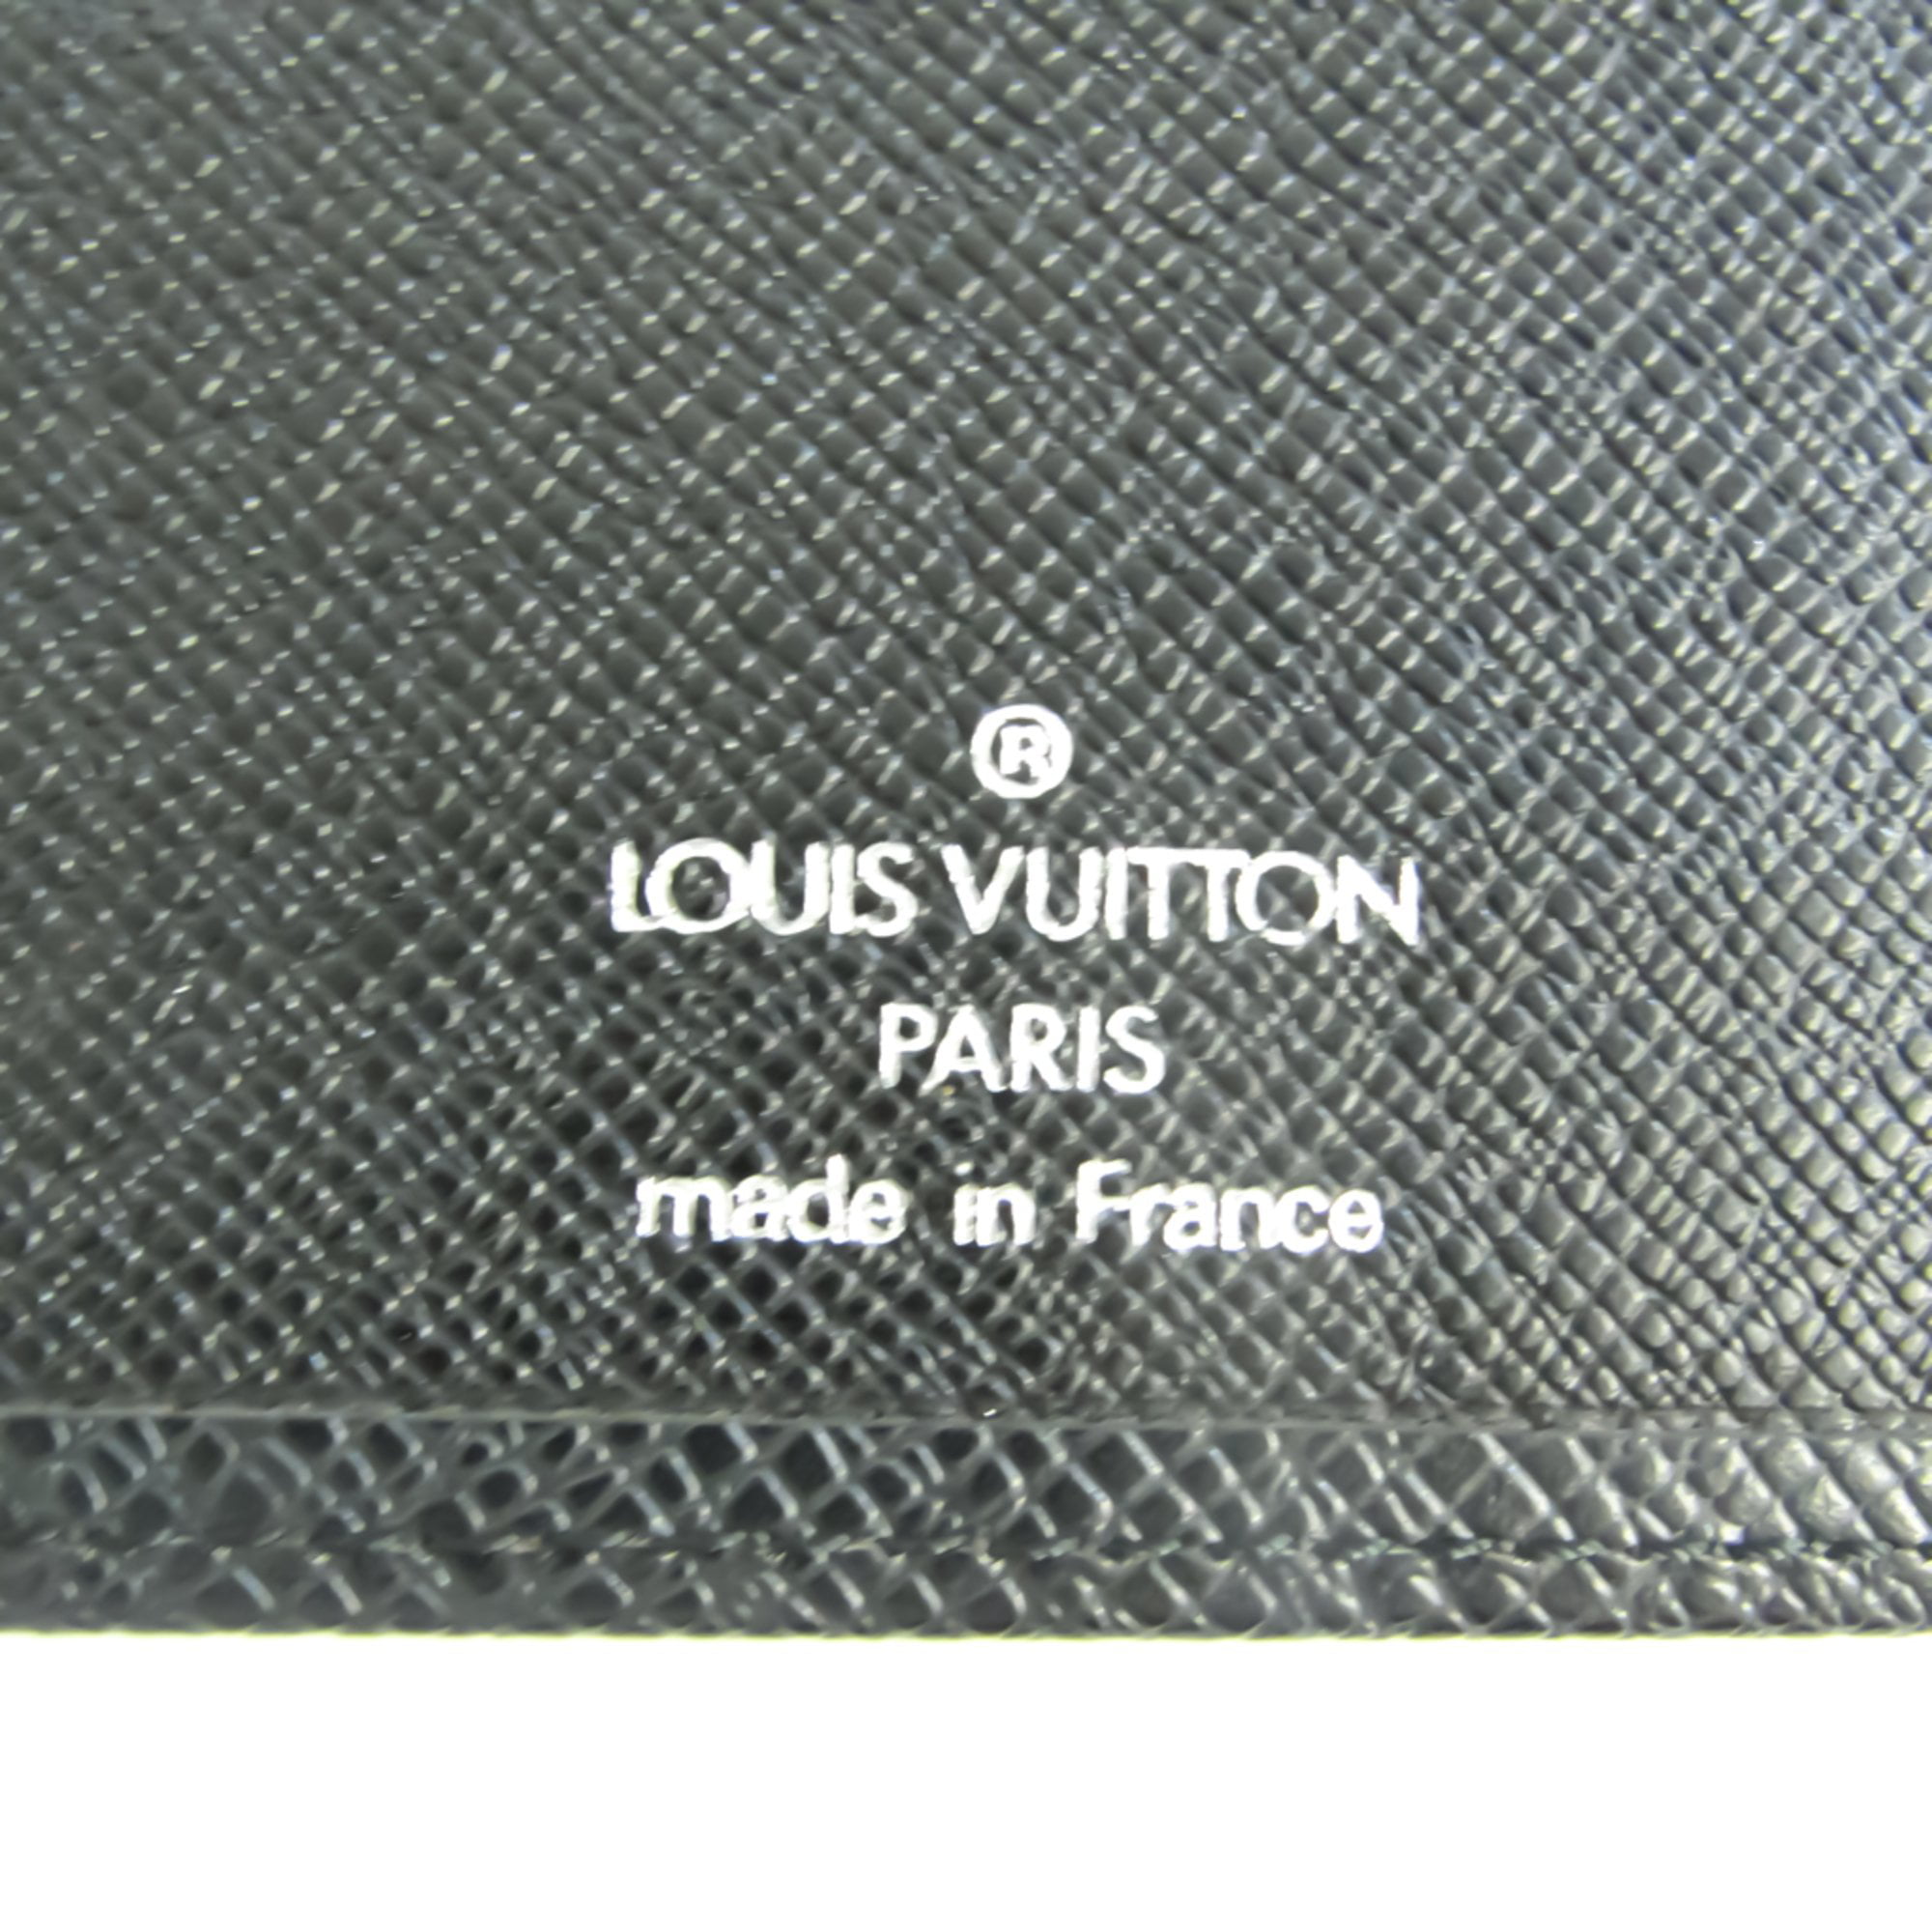  Louis Vuitton Wallet M30295 Taiga Portefeuil Myrtle Noir SV  Logo LOUIS VUITTON Men's Bifold Diagonal Card Wallet, noir : Clothing,  Shoes & Jewelry